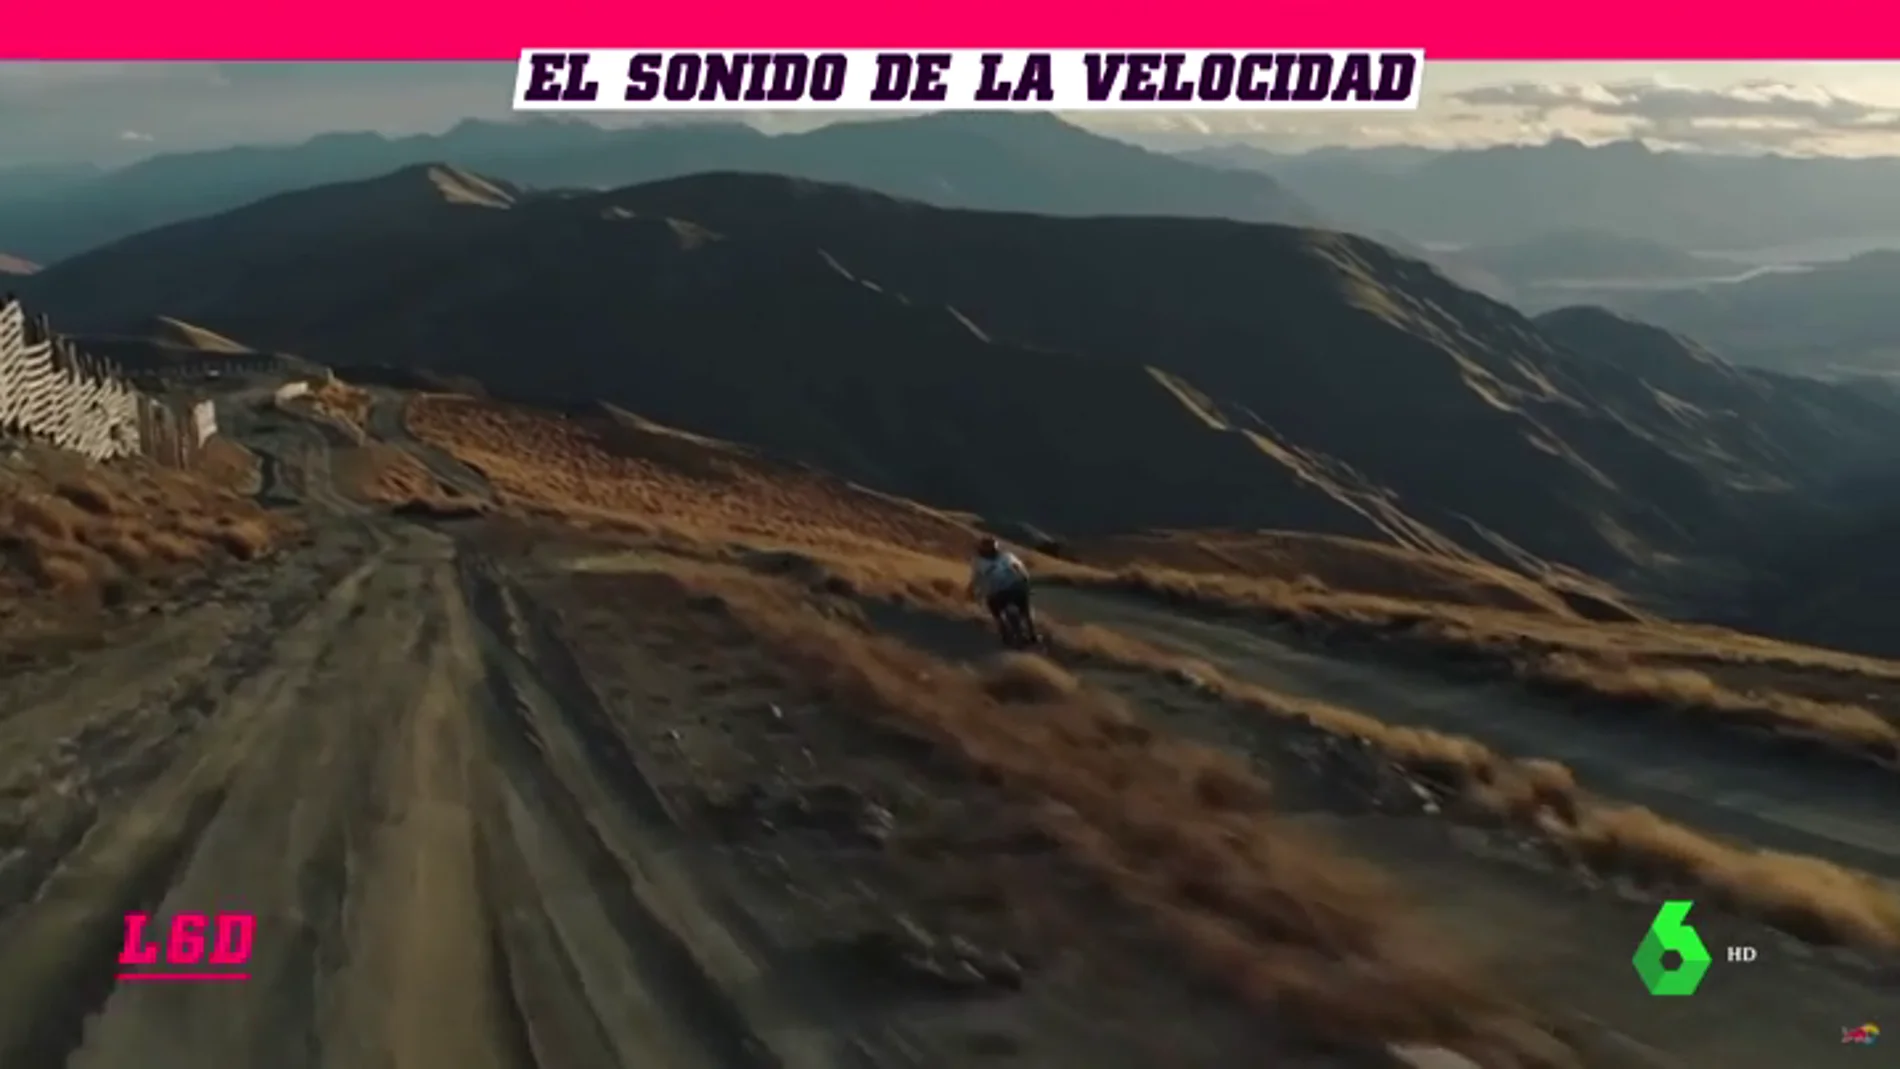 Escalofriante descenso en bicicleta: Reece Potter 'vuela' sobre la montaña